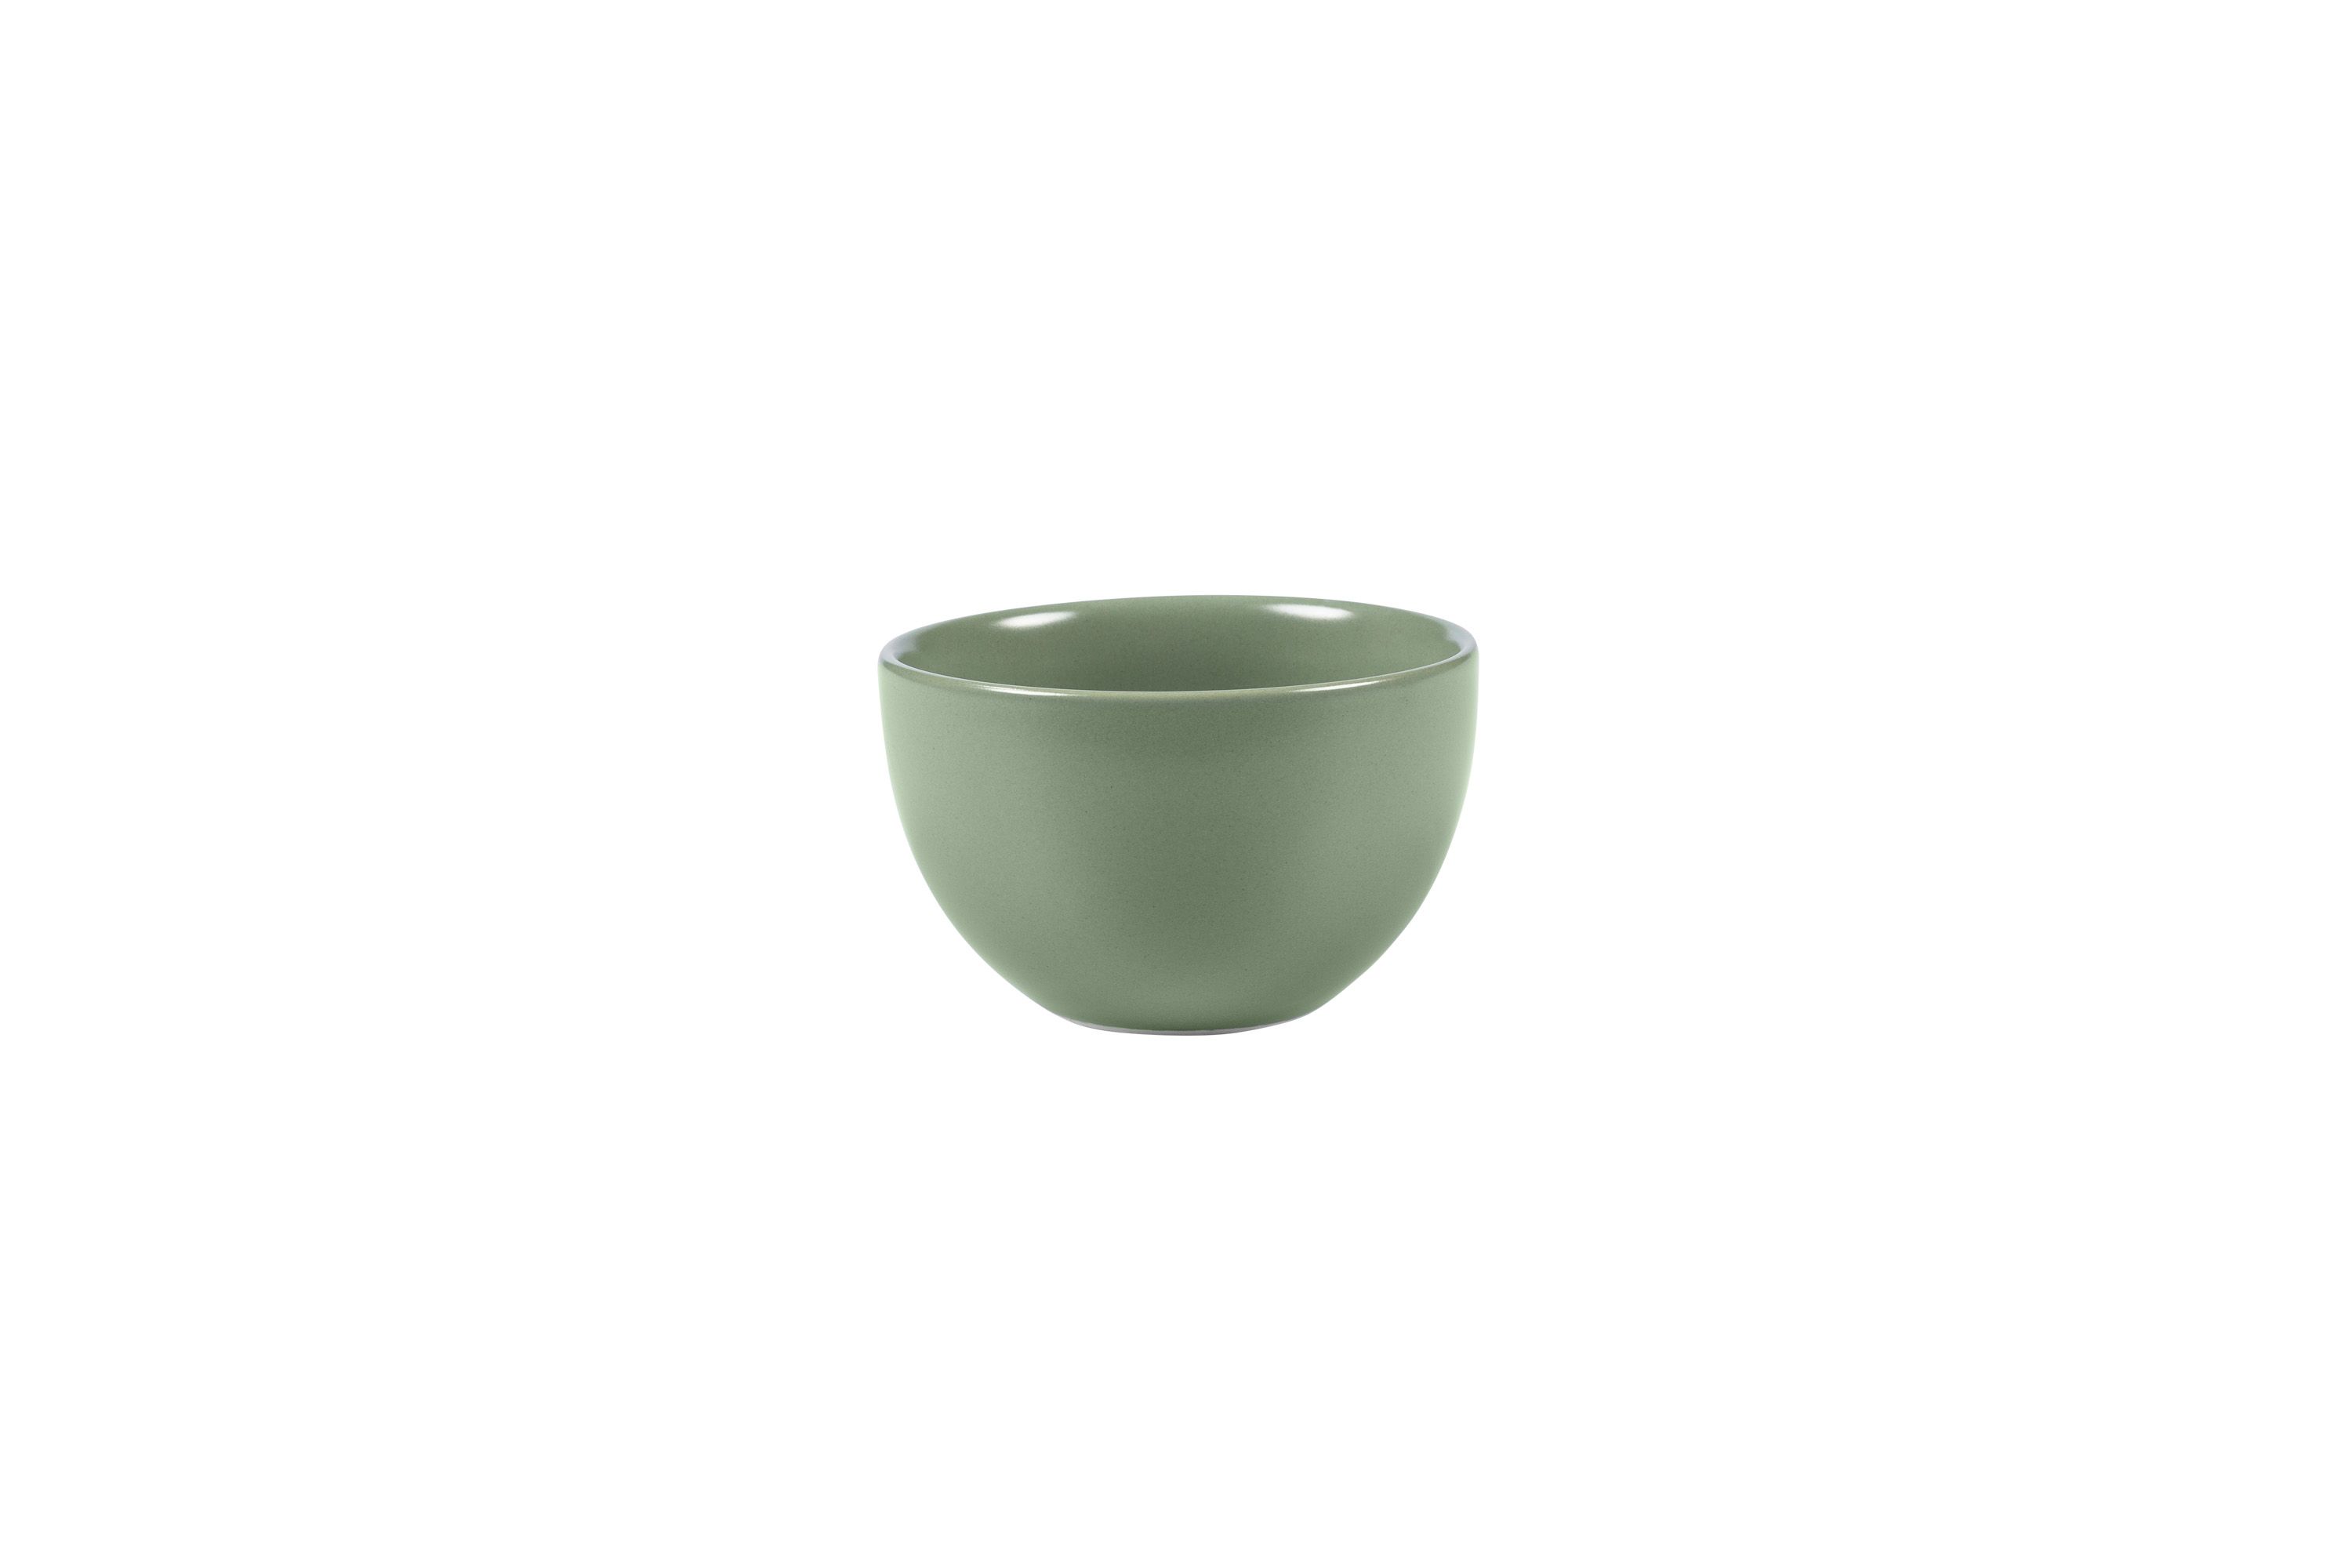 Eine kleine, grüne Stoneware-Schüssel